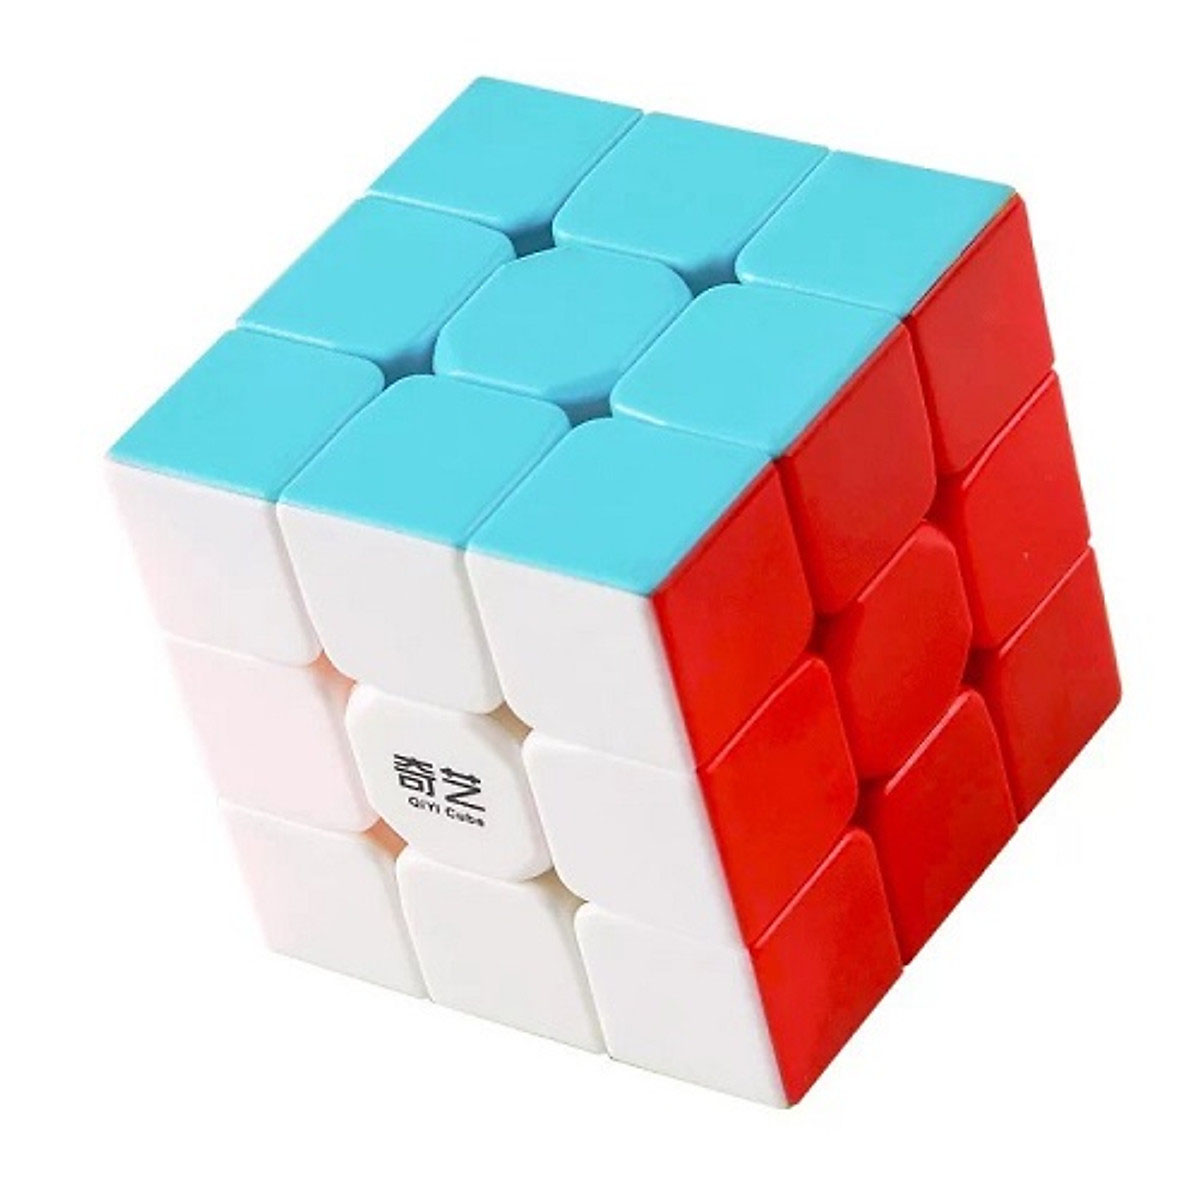 Rubik nguyên khối 3x3 Bản Cao Cấp